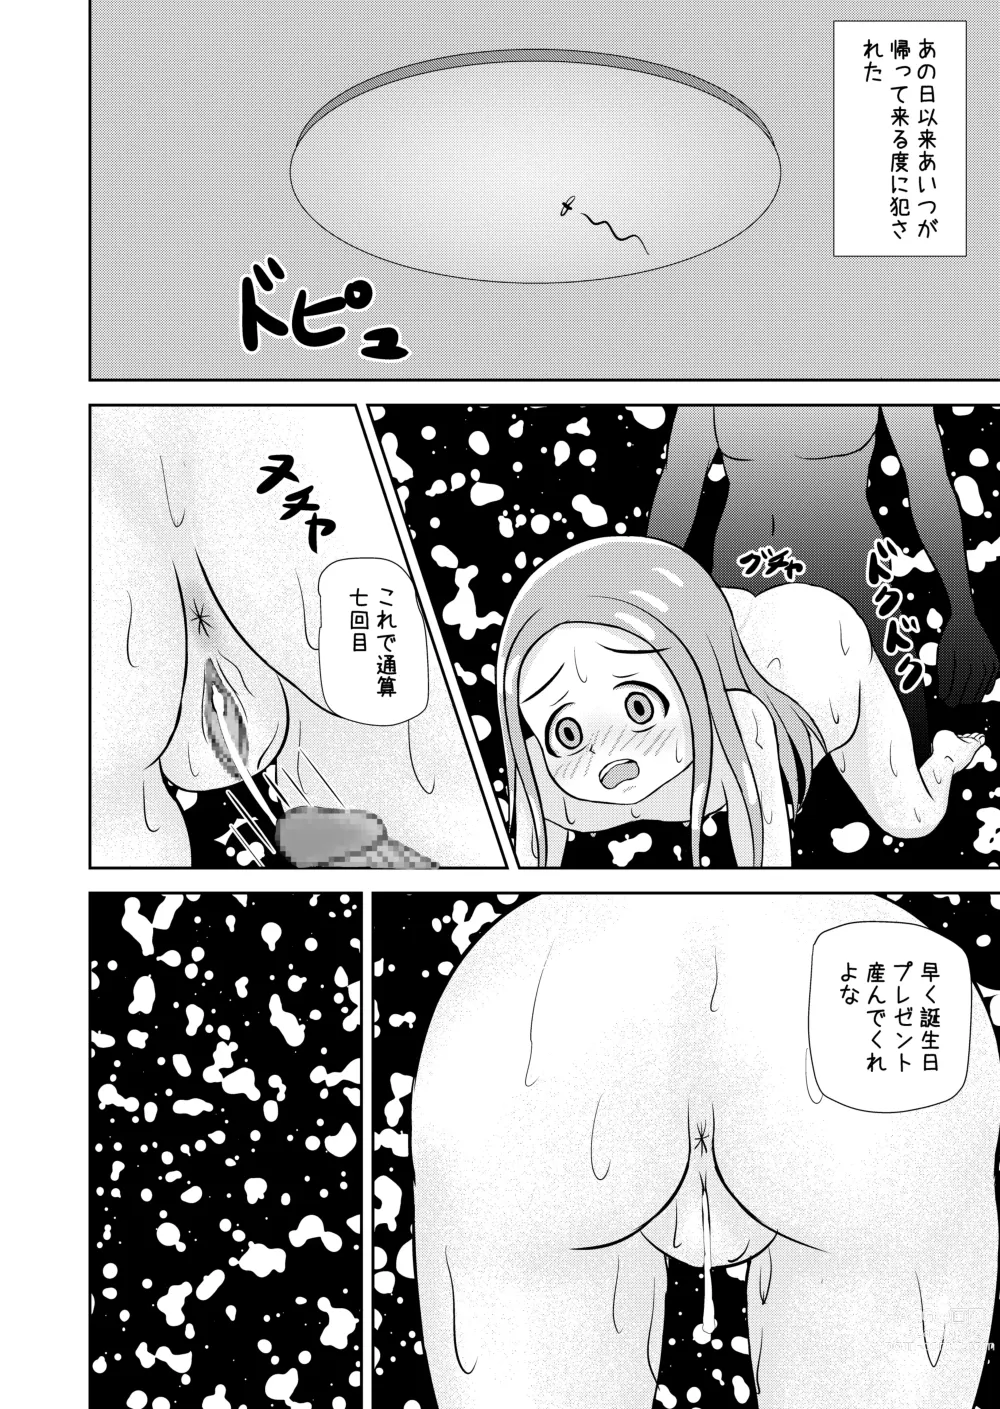 Page 82 of doujinshi Watashi to Dare no Ko?